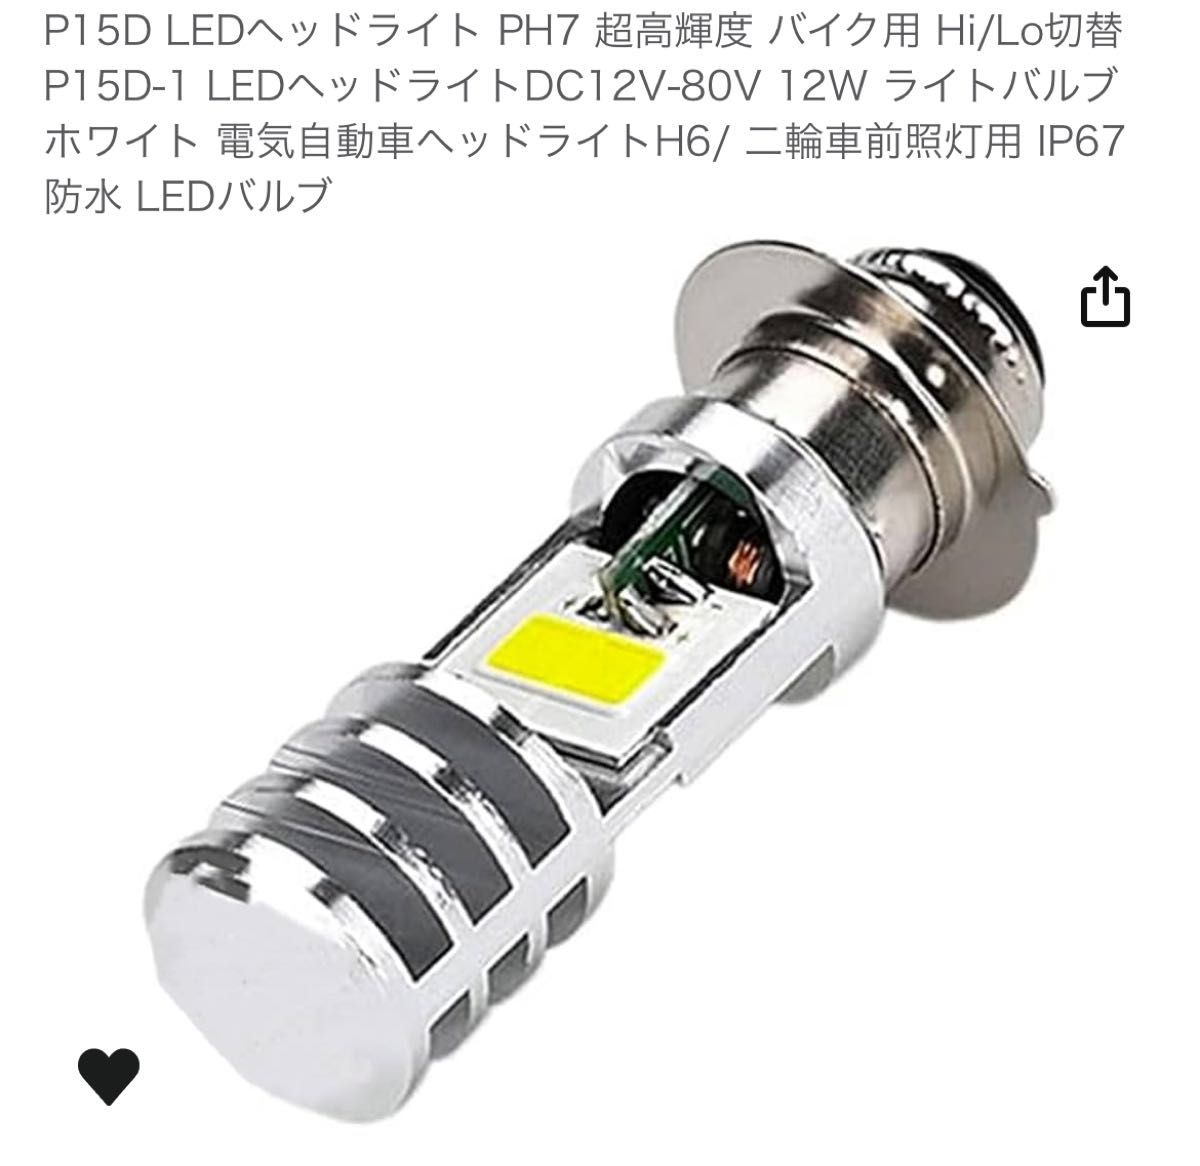 P15D LEDヘッドライト PH7 バイク用 Hi/Lo切替 P15D-1 LED DC12V-80V 12W ホワイト